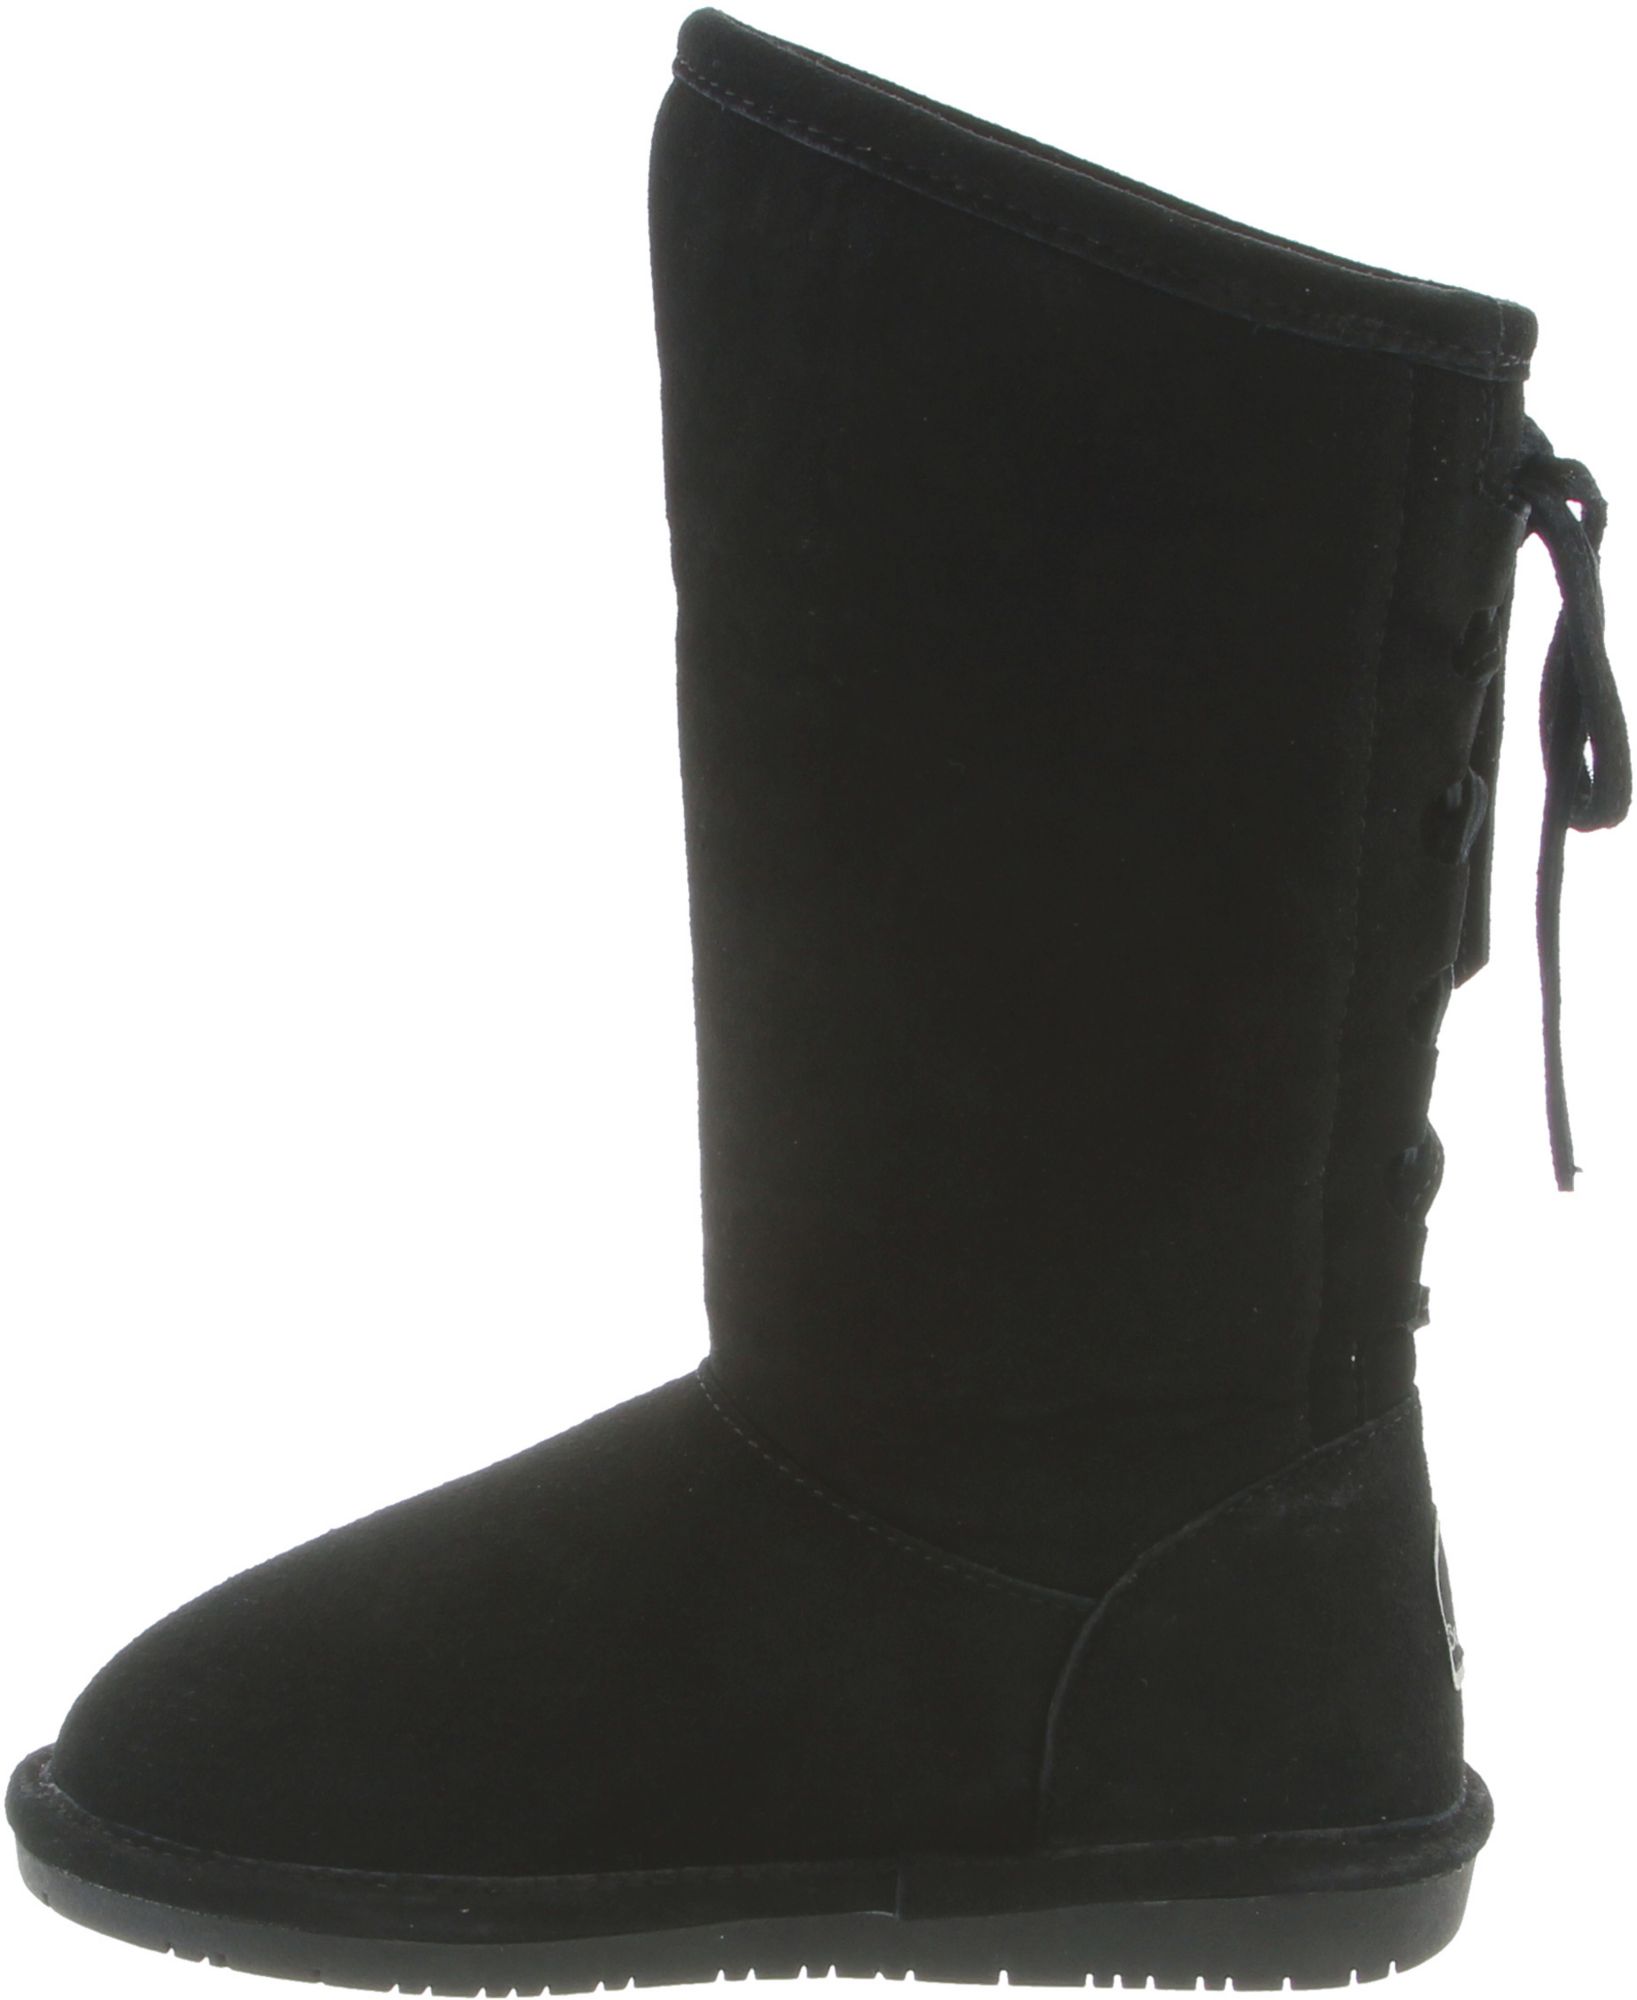 BEARPAW Women's Phylly II Winter Boots